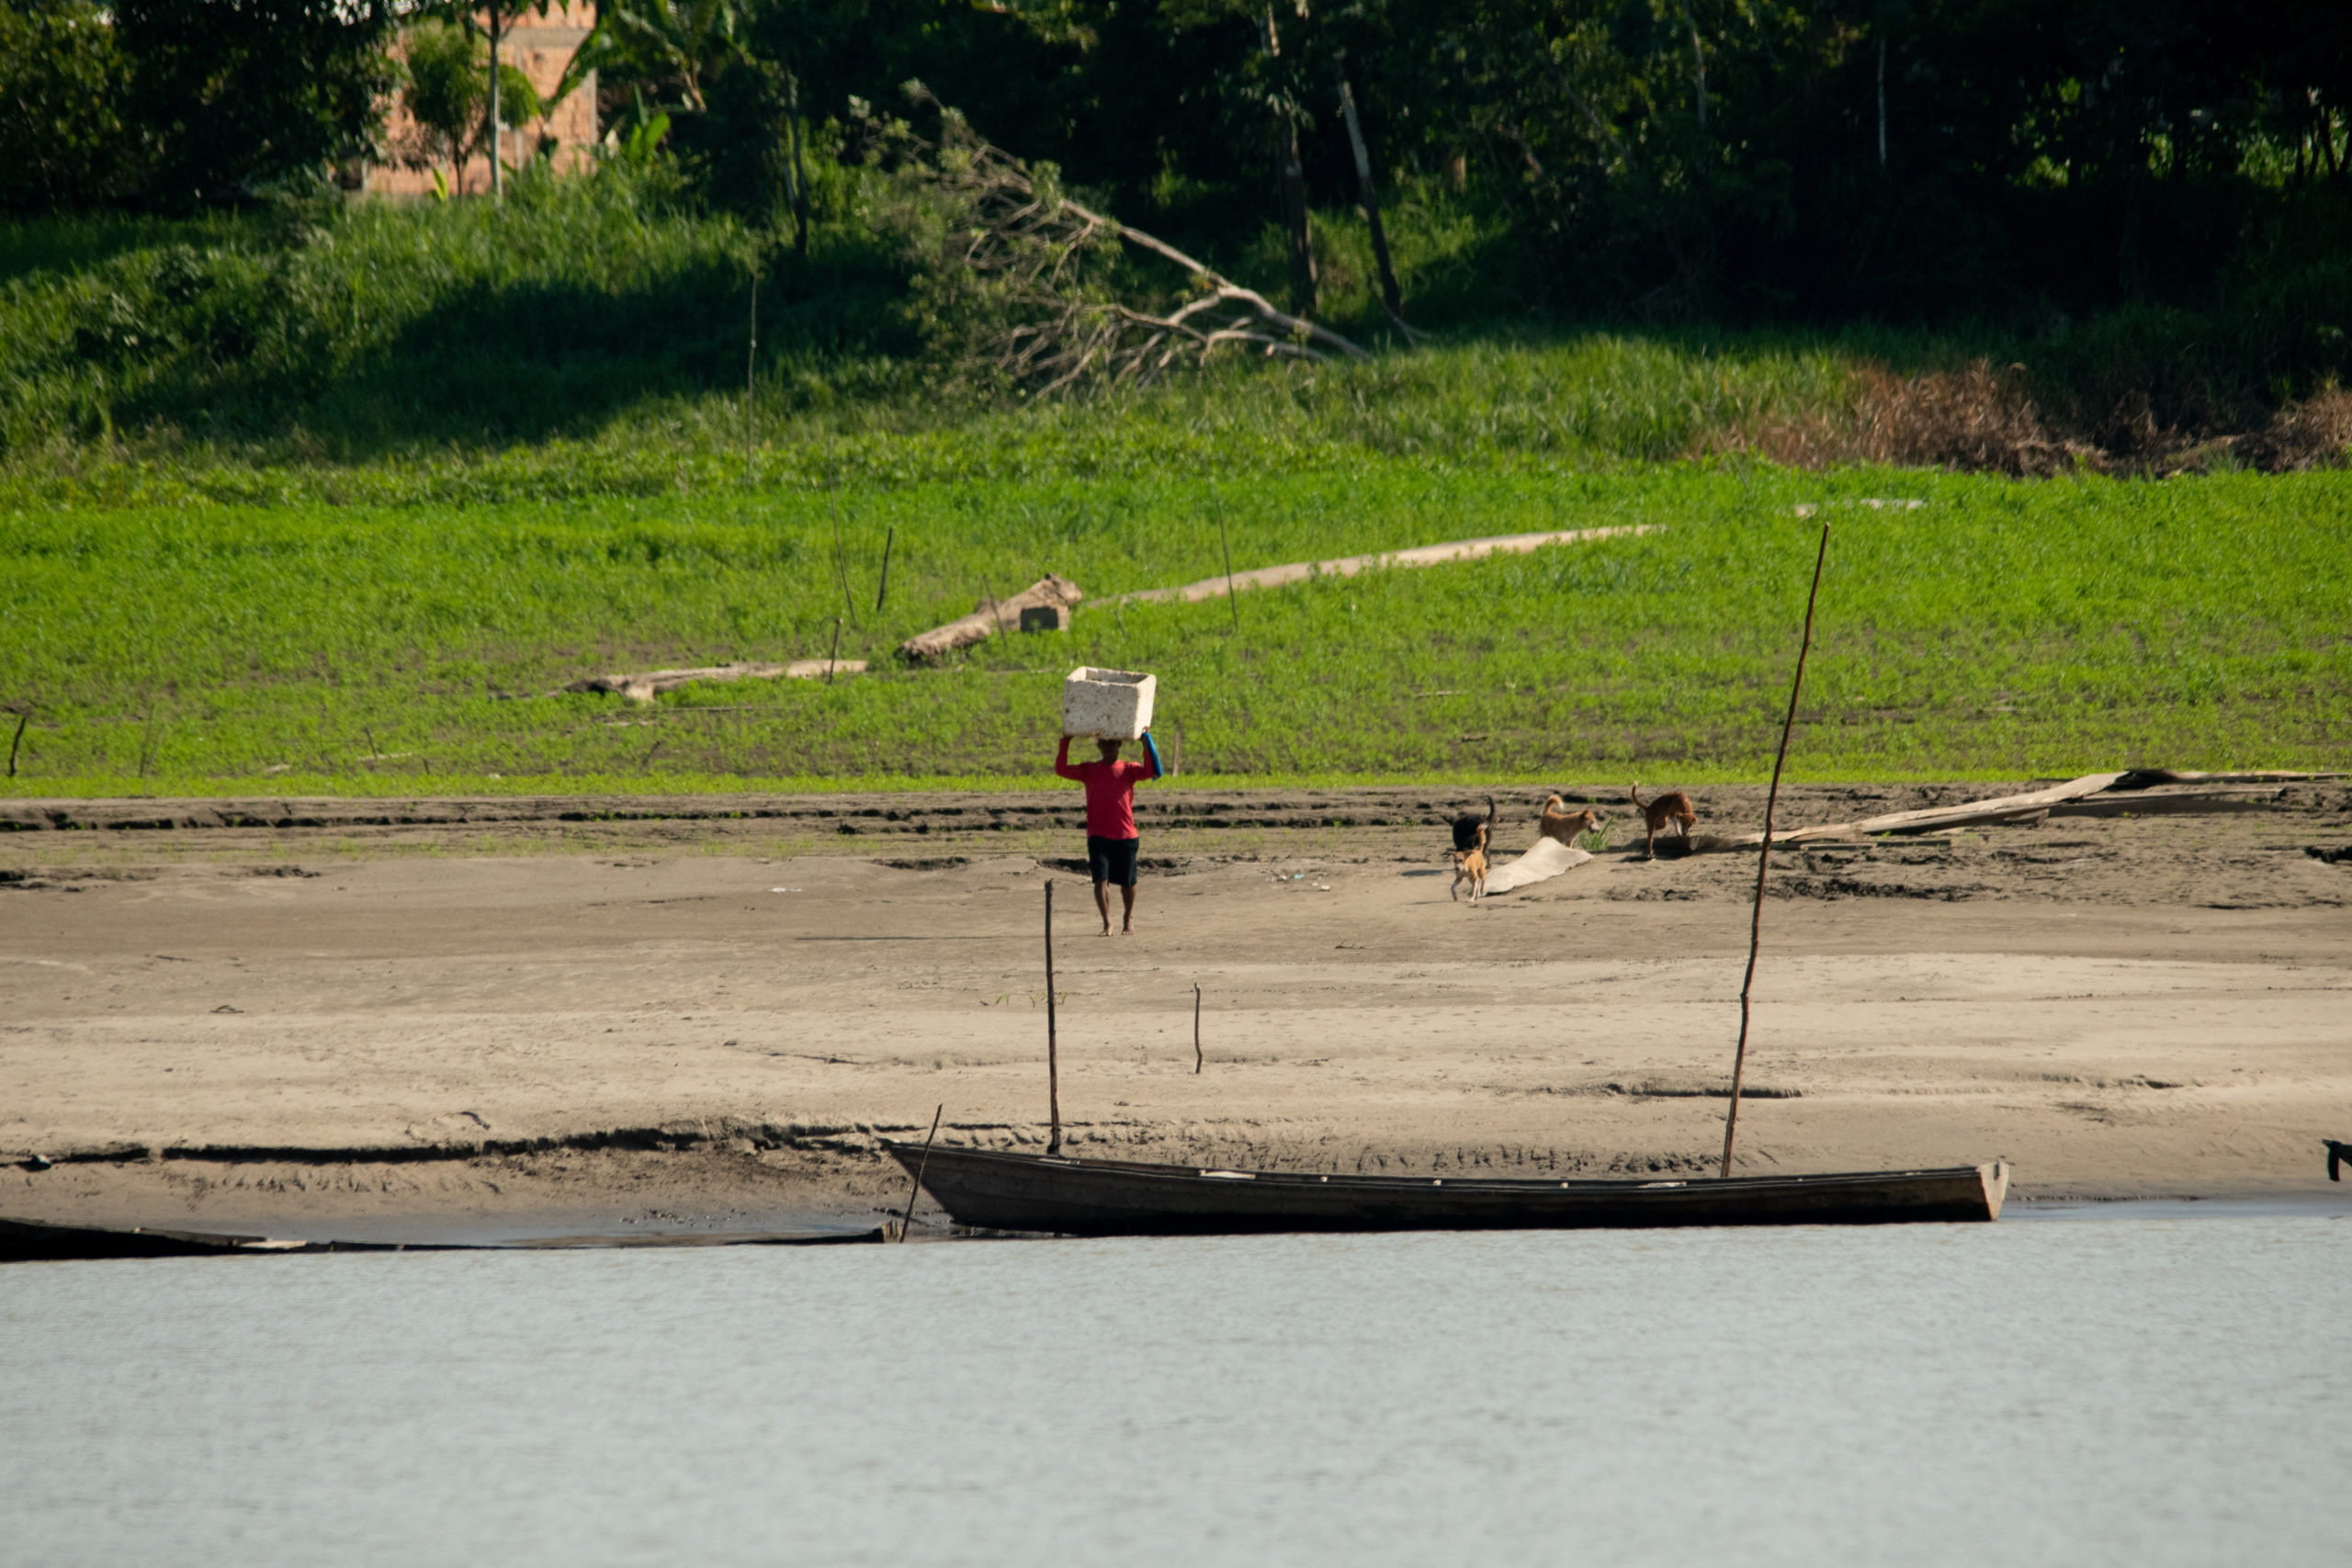 Seca no as deixa cidades isoladas e com escassez de alimento -  Amazônia Real